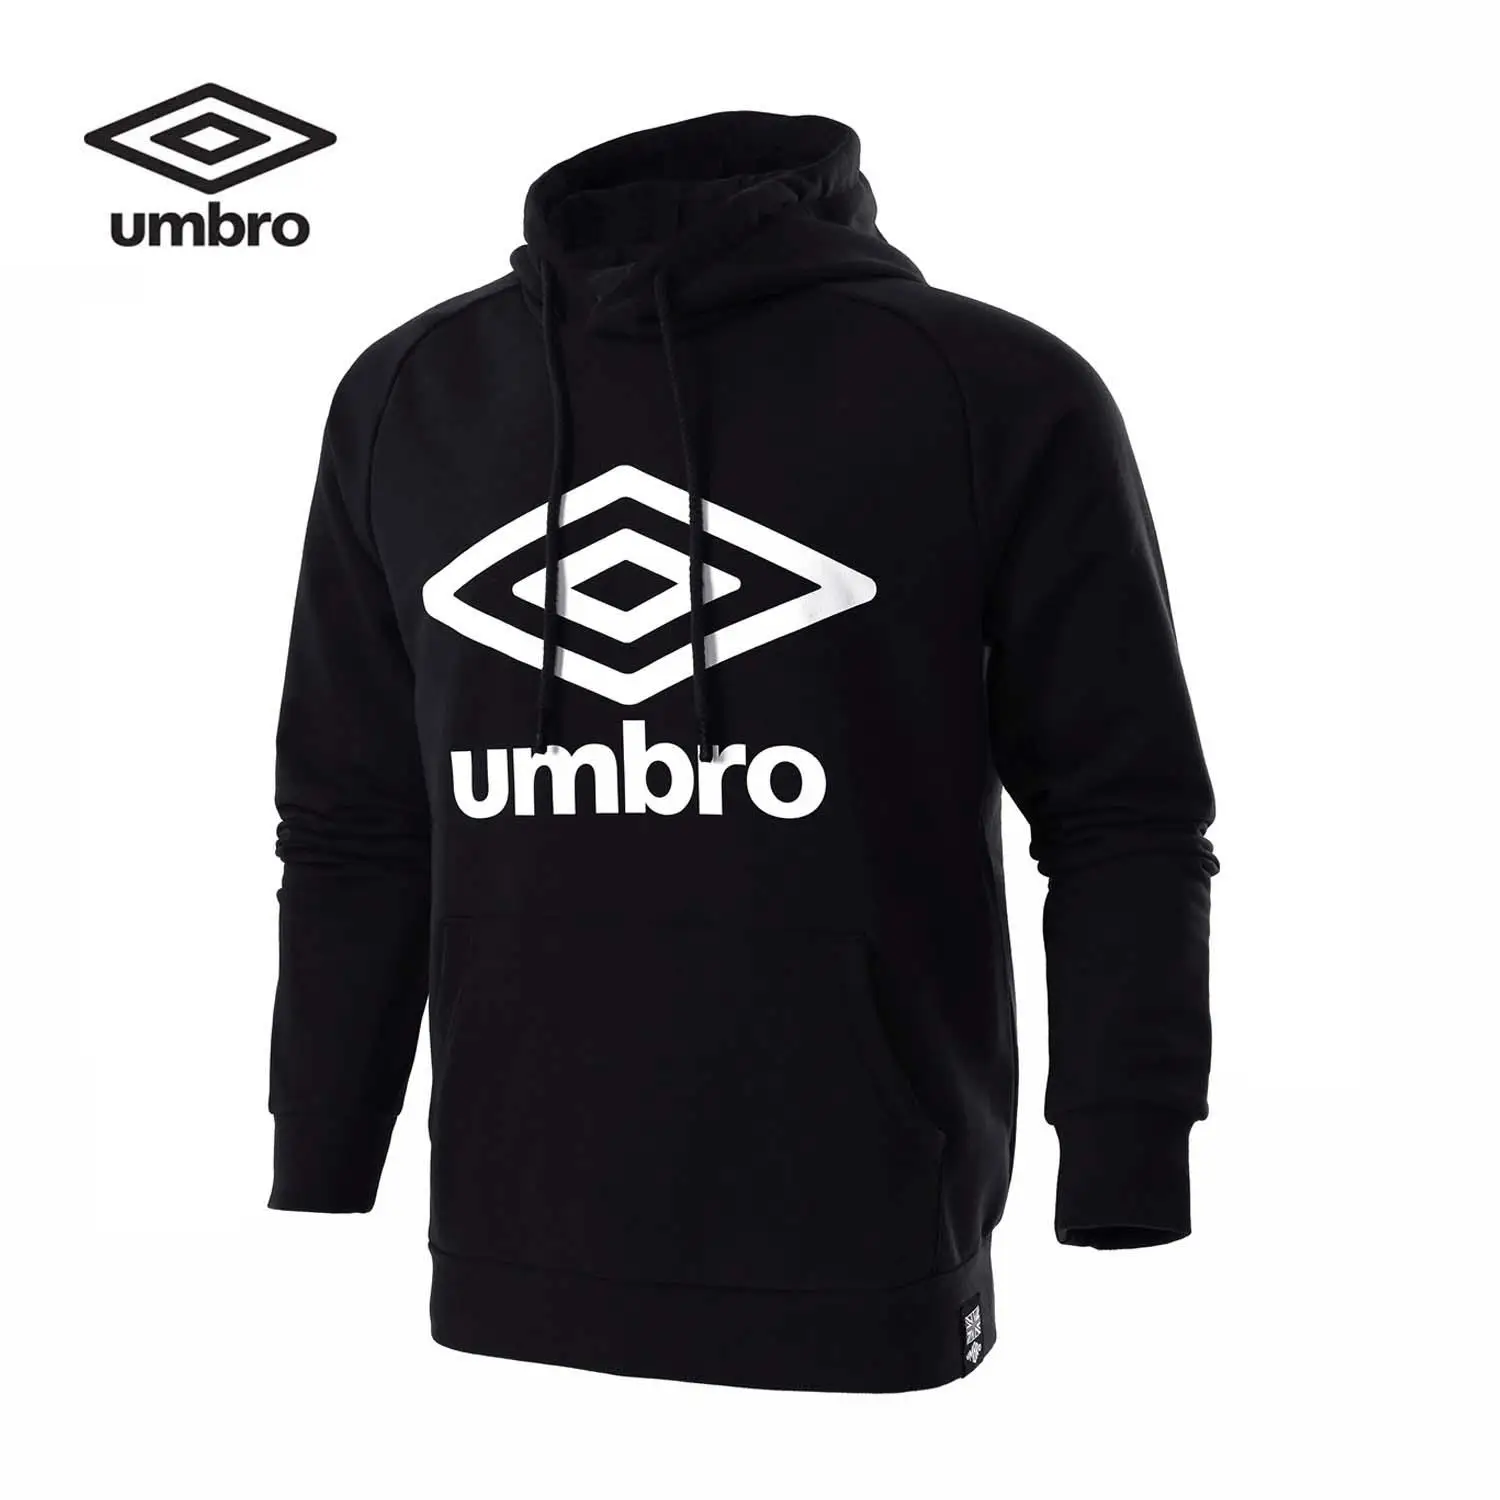 Umbro мужские новые зимние толстовки скейтборды спортивная куртка с капюшоном UCB63253 - Цвет: Черный